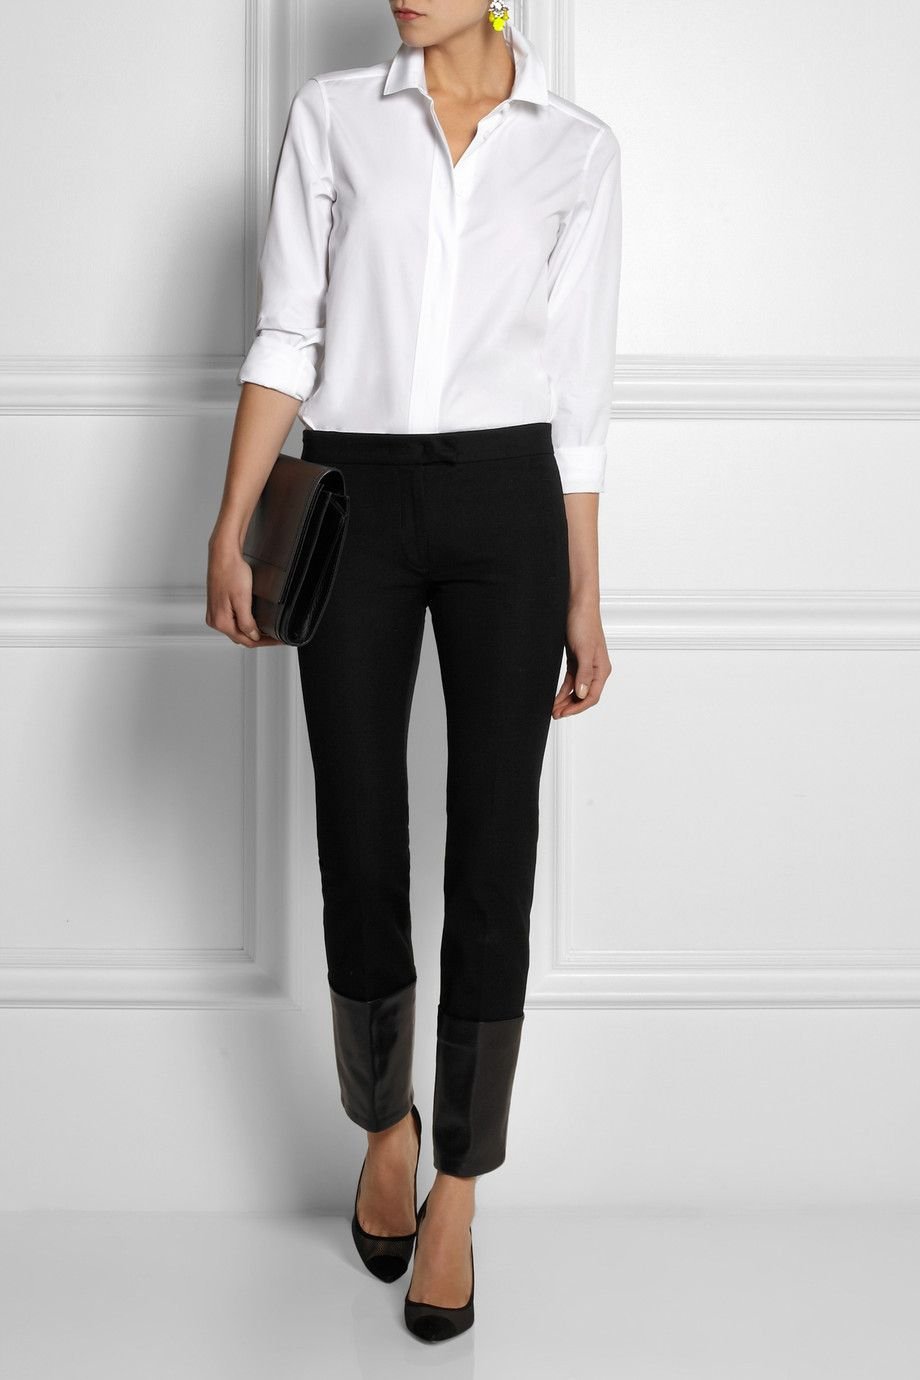 Черные брюки белая блузка. Блузка с черными брюками. Белая рубашка и брюки женские. Белая рубашка и черные брюки женские. Белая блузкачерныые брюки.